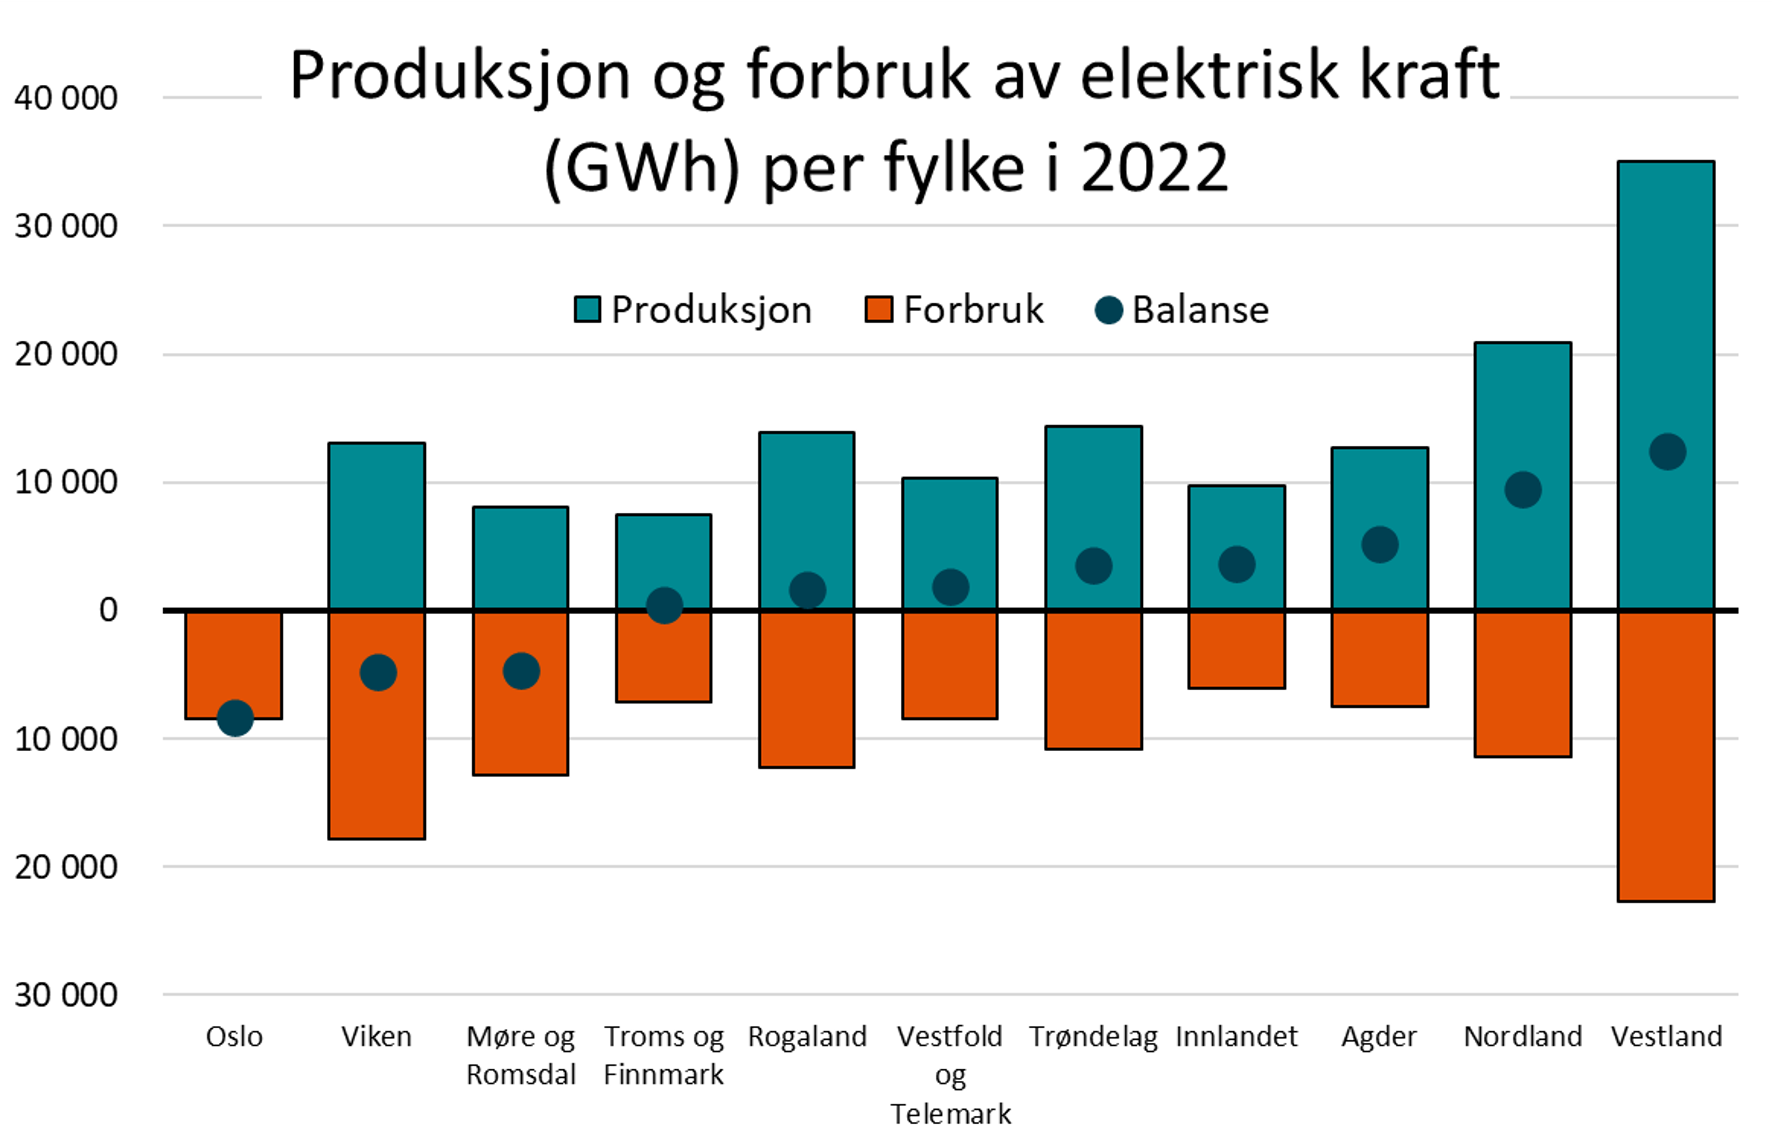 Produksjon og forbruk av elektrisk kraft (GWh) per fylke i 2022